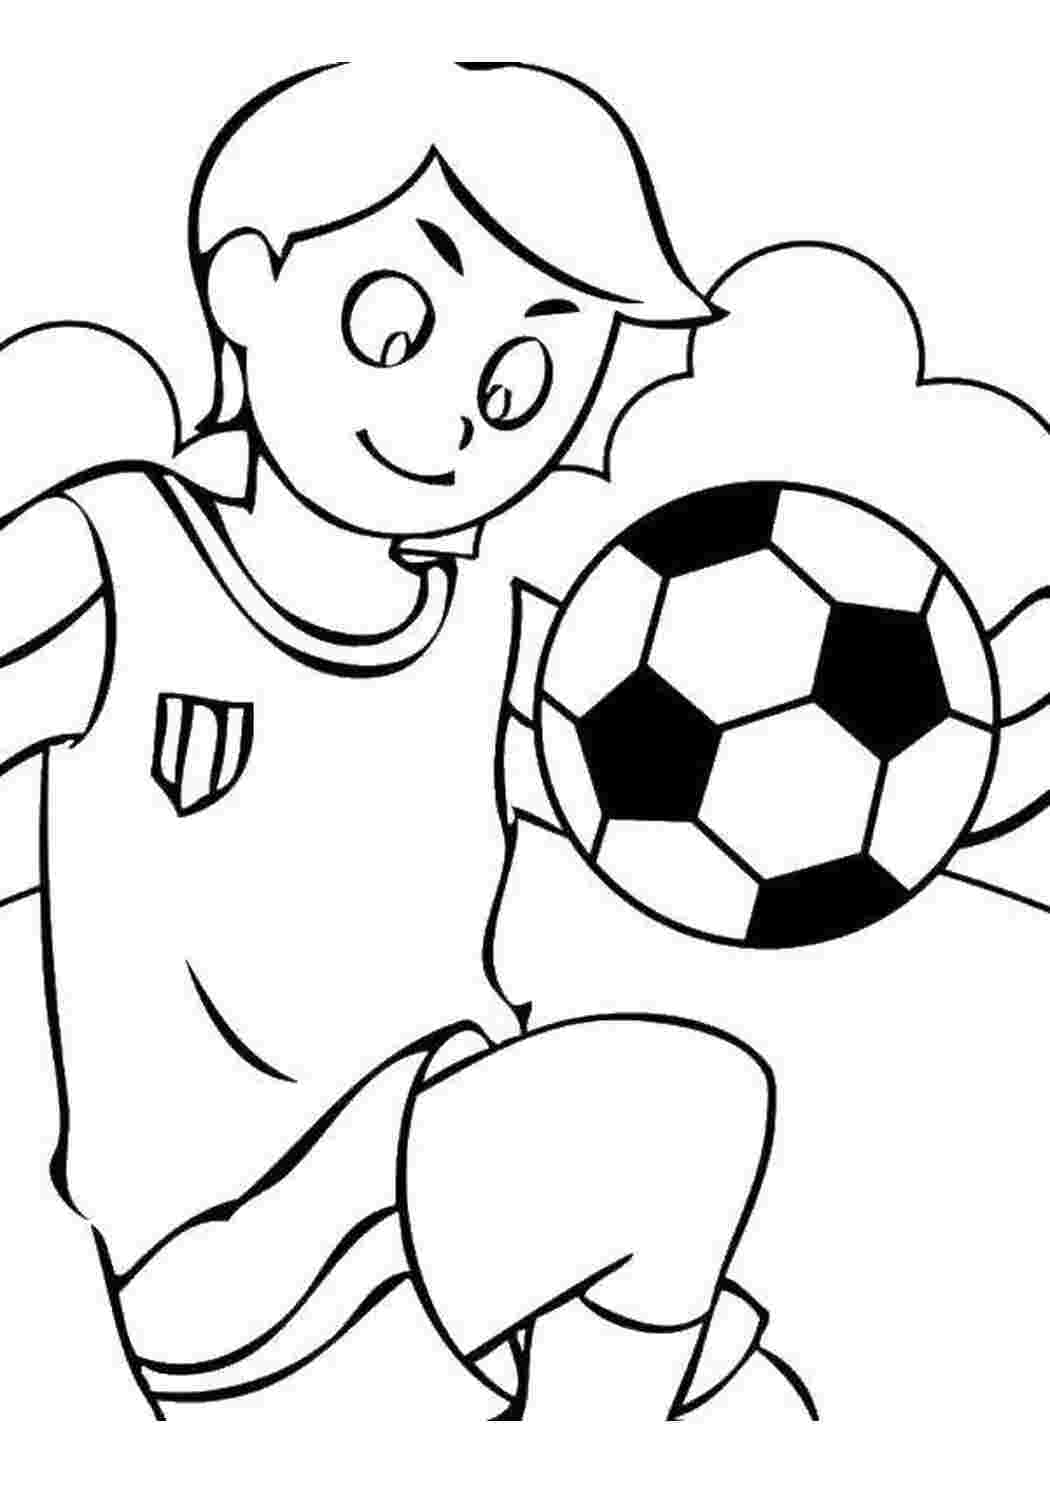 Раскраски Мальчик и мяч Для мальчиков мальчик, мяч, футбол